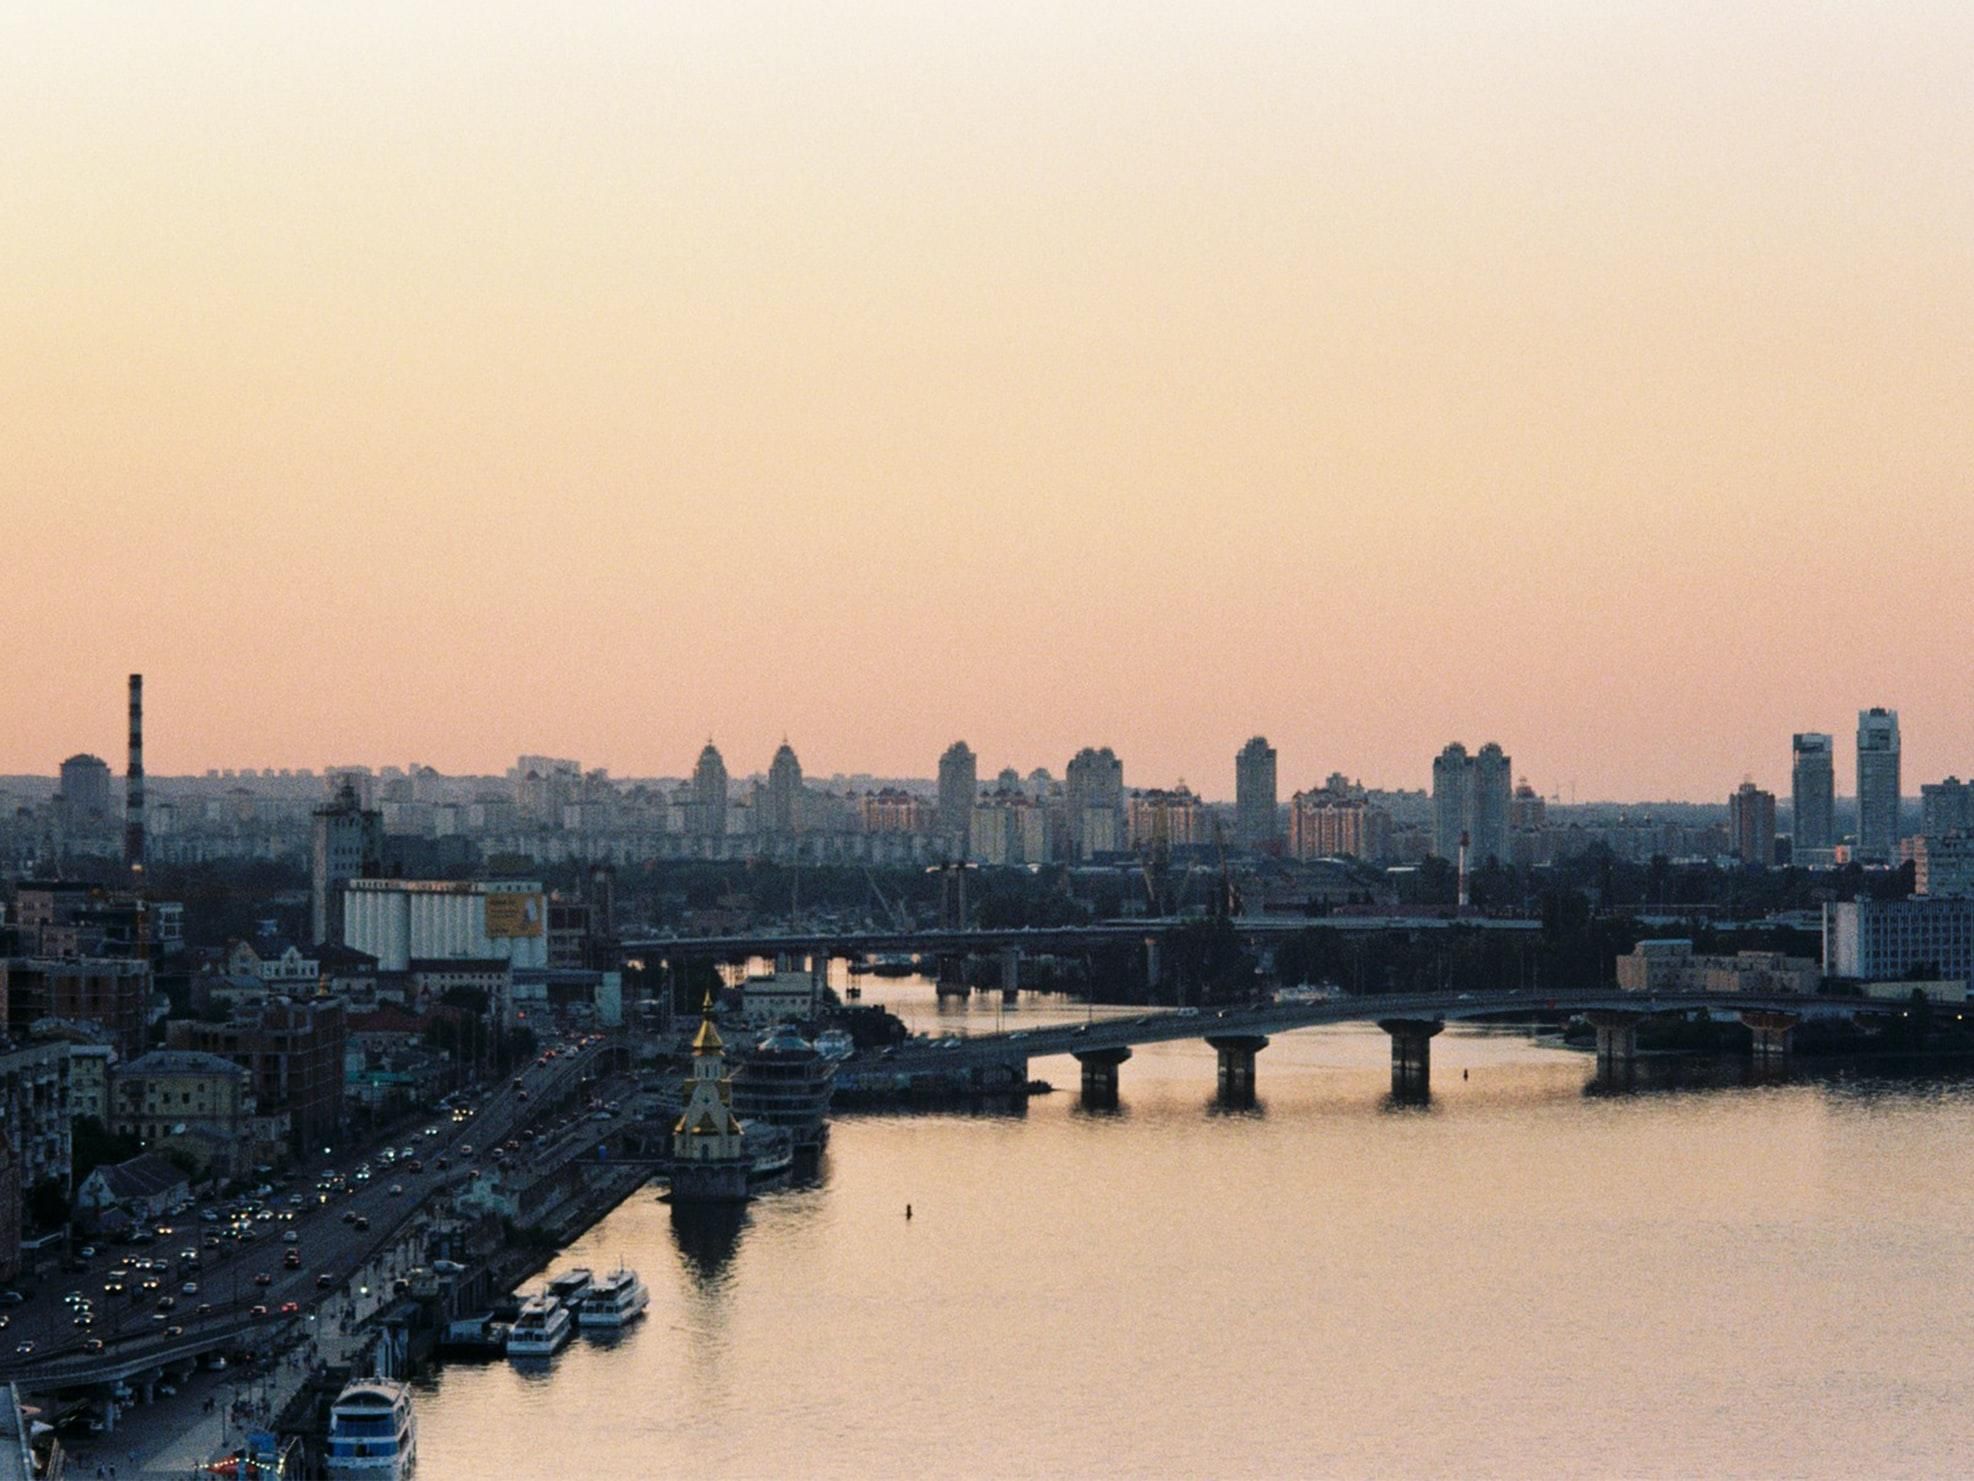 Ціна на первинну нерухомість у Києві виросла на 3,4%: як розподілилися ціни - Нерухомість